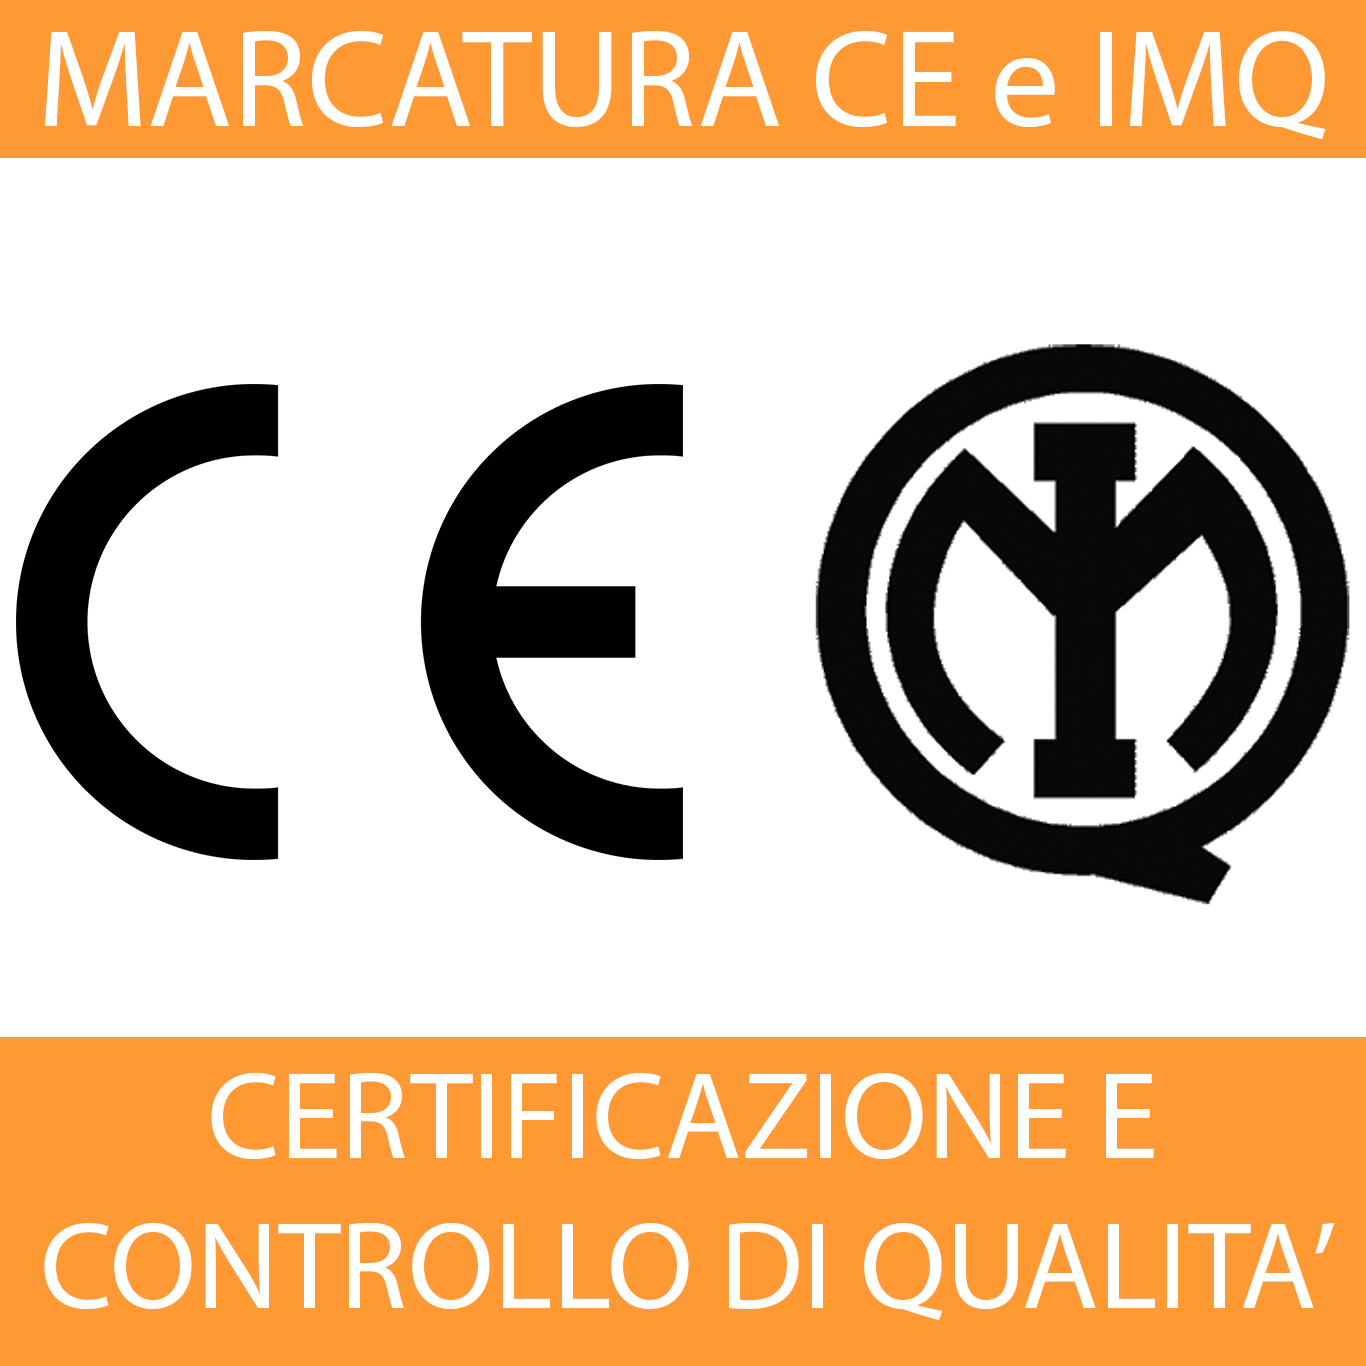 Marcaturà CE, marchio IMQ - Mthw.it